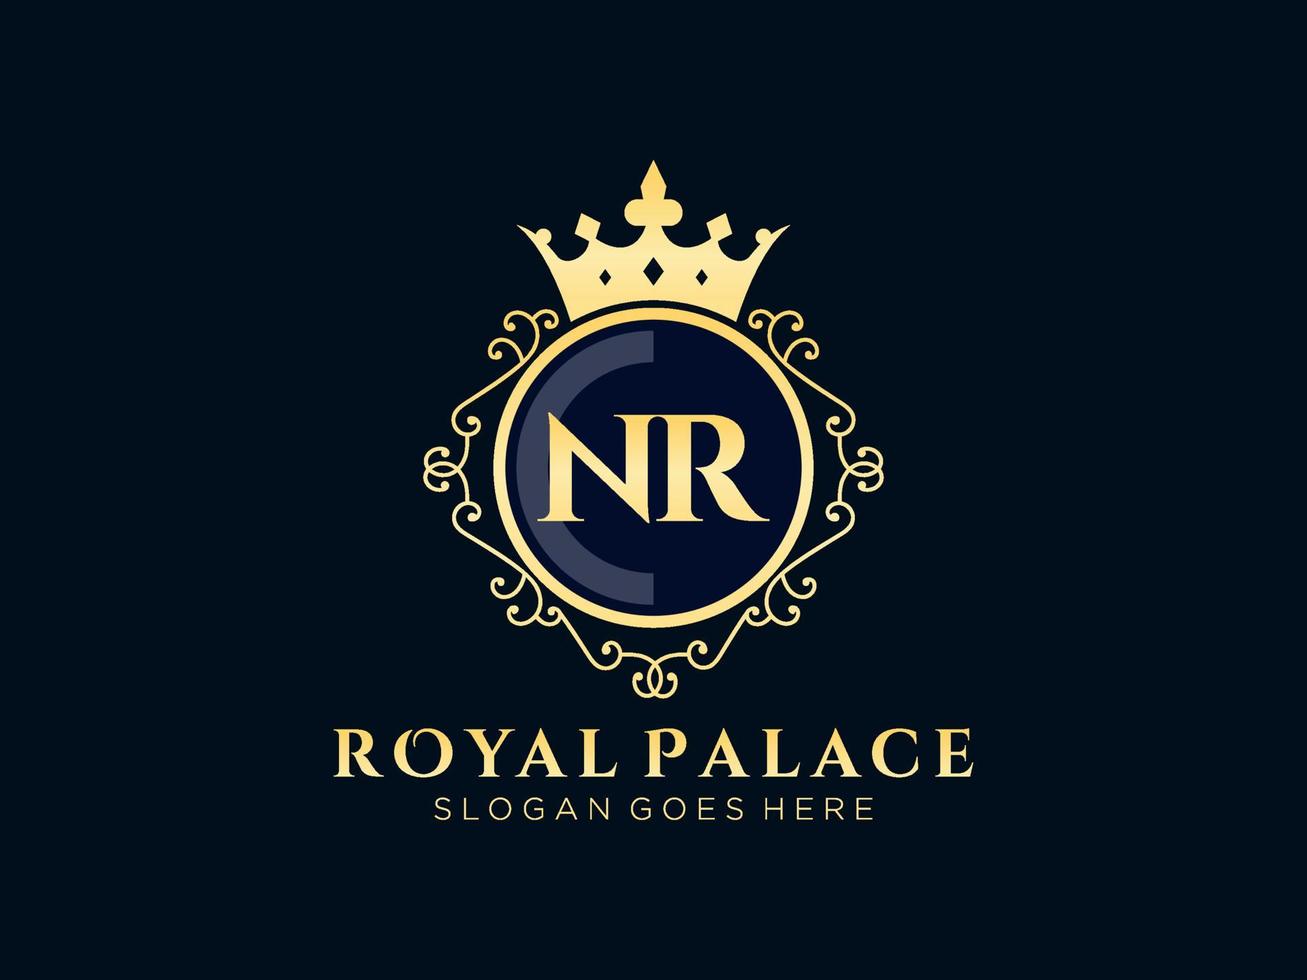 lettre nr logo victorien de luxe royal antique avec cadre ornemental. vecteur